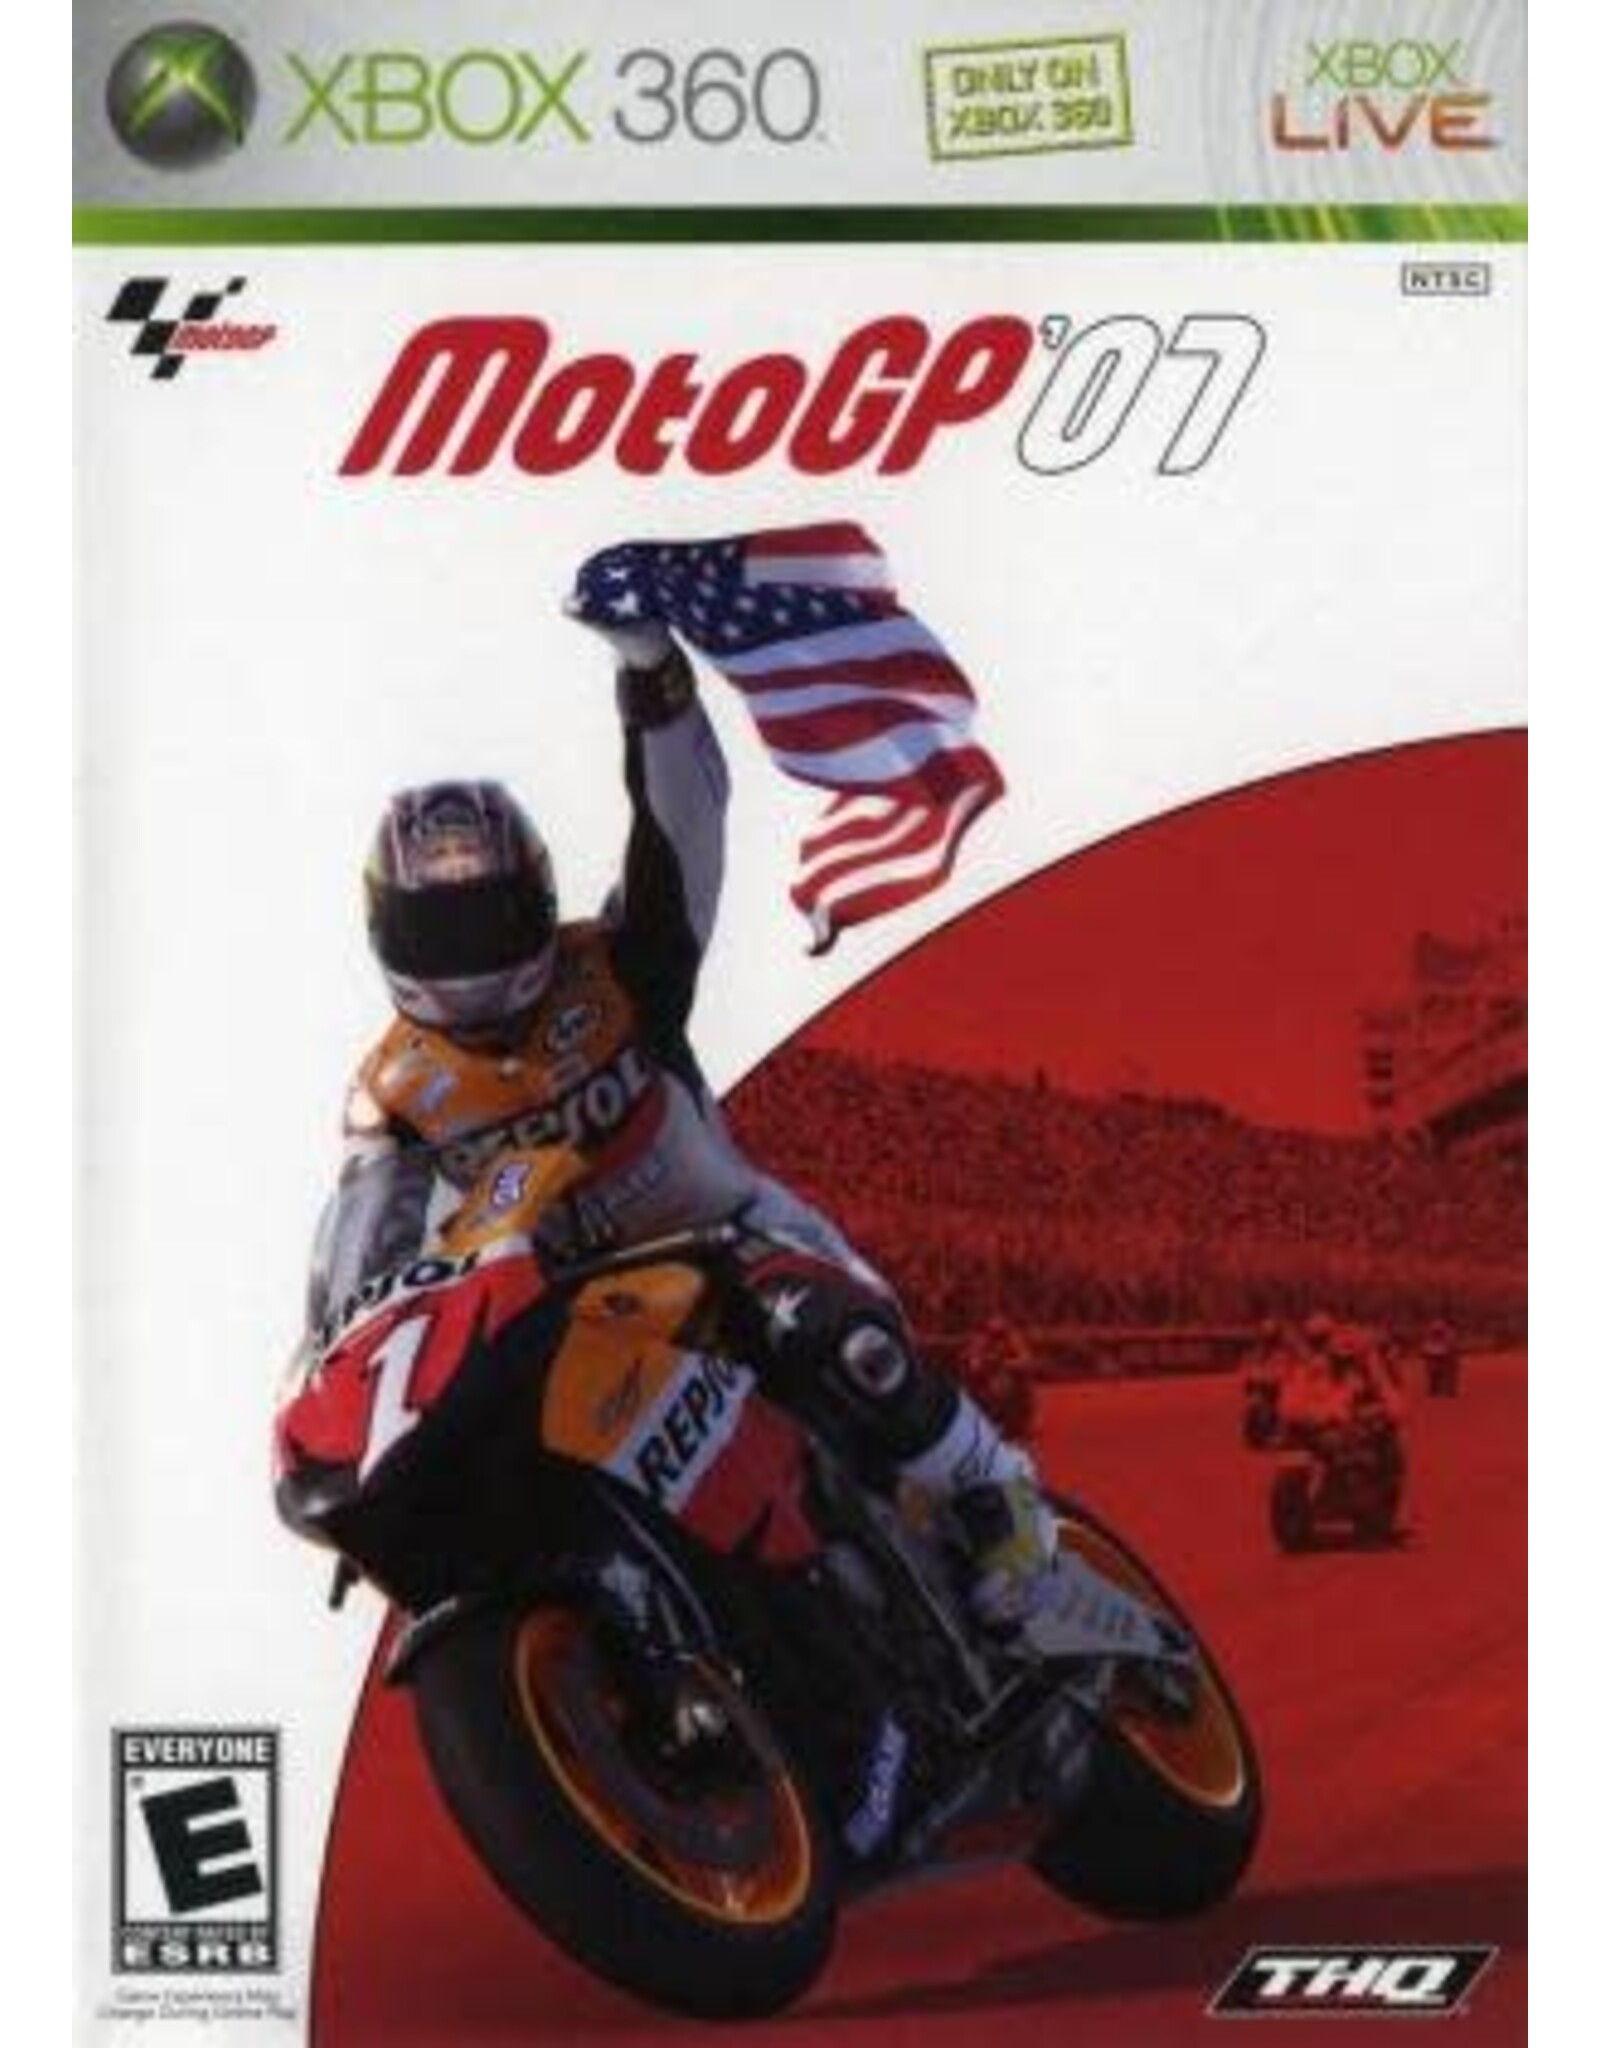 Xbox 360 Moto GP 07 (Used)